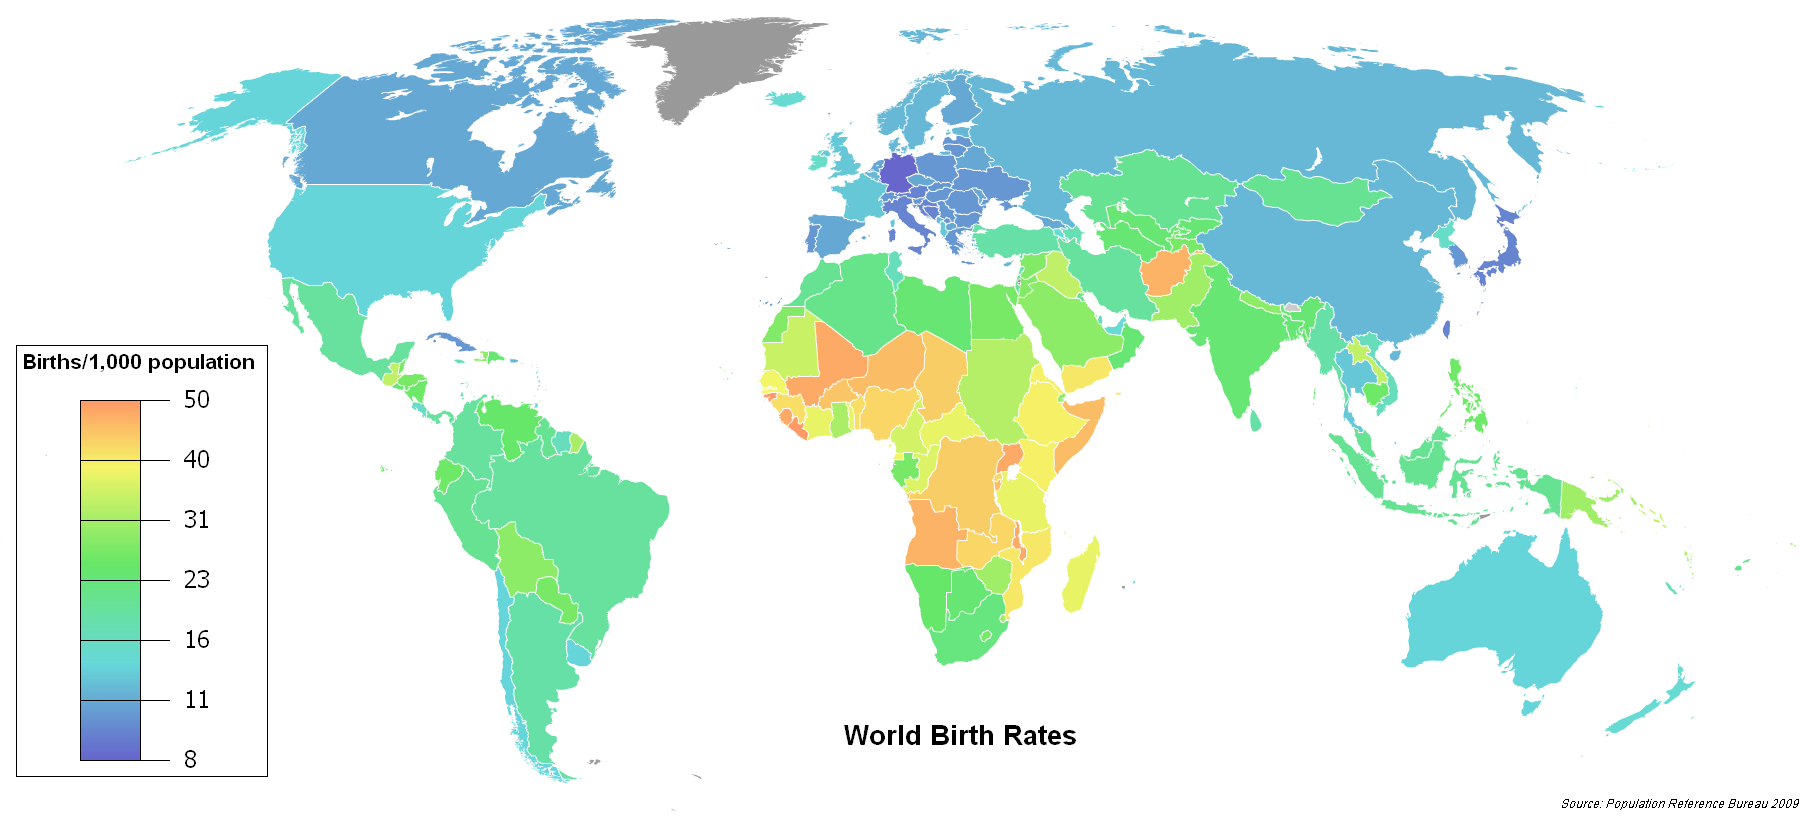 Родившихся на 1000 человек в 2008 году